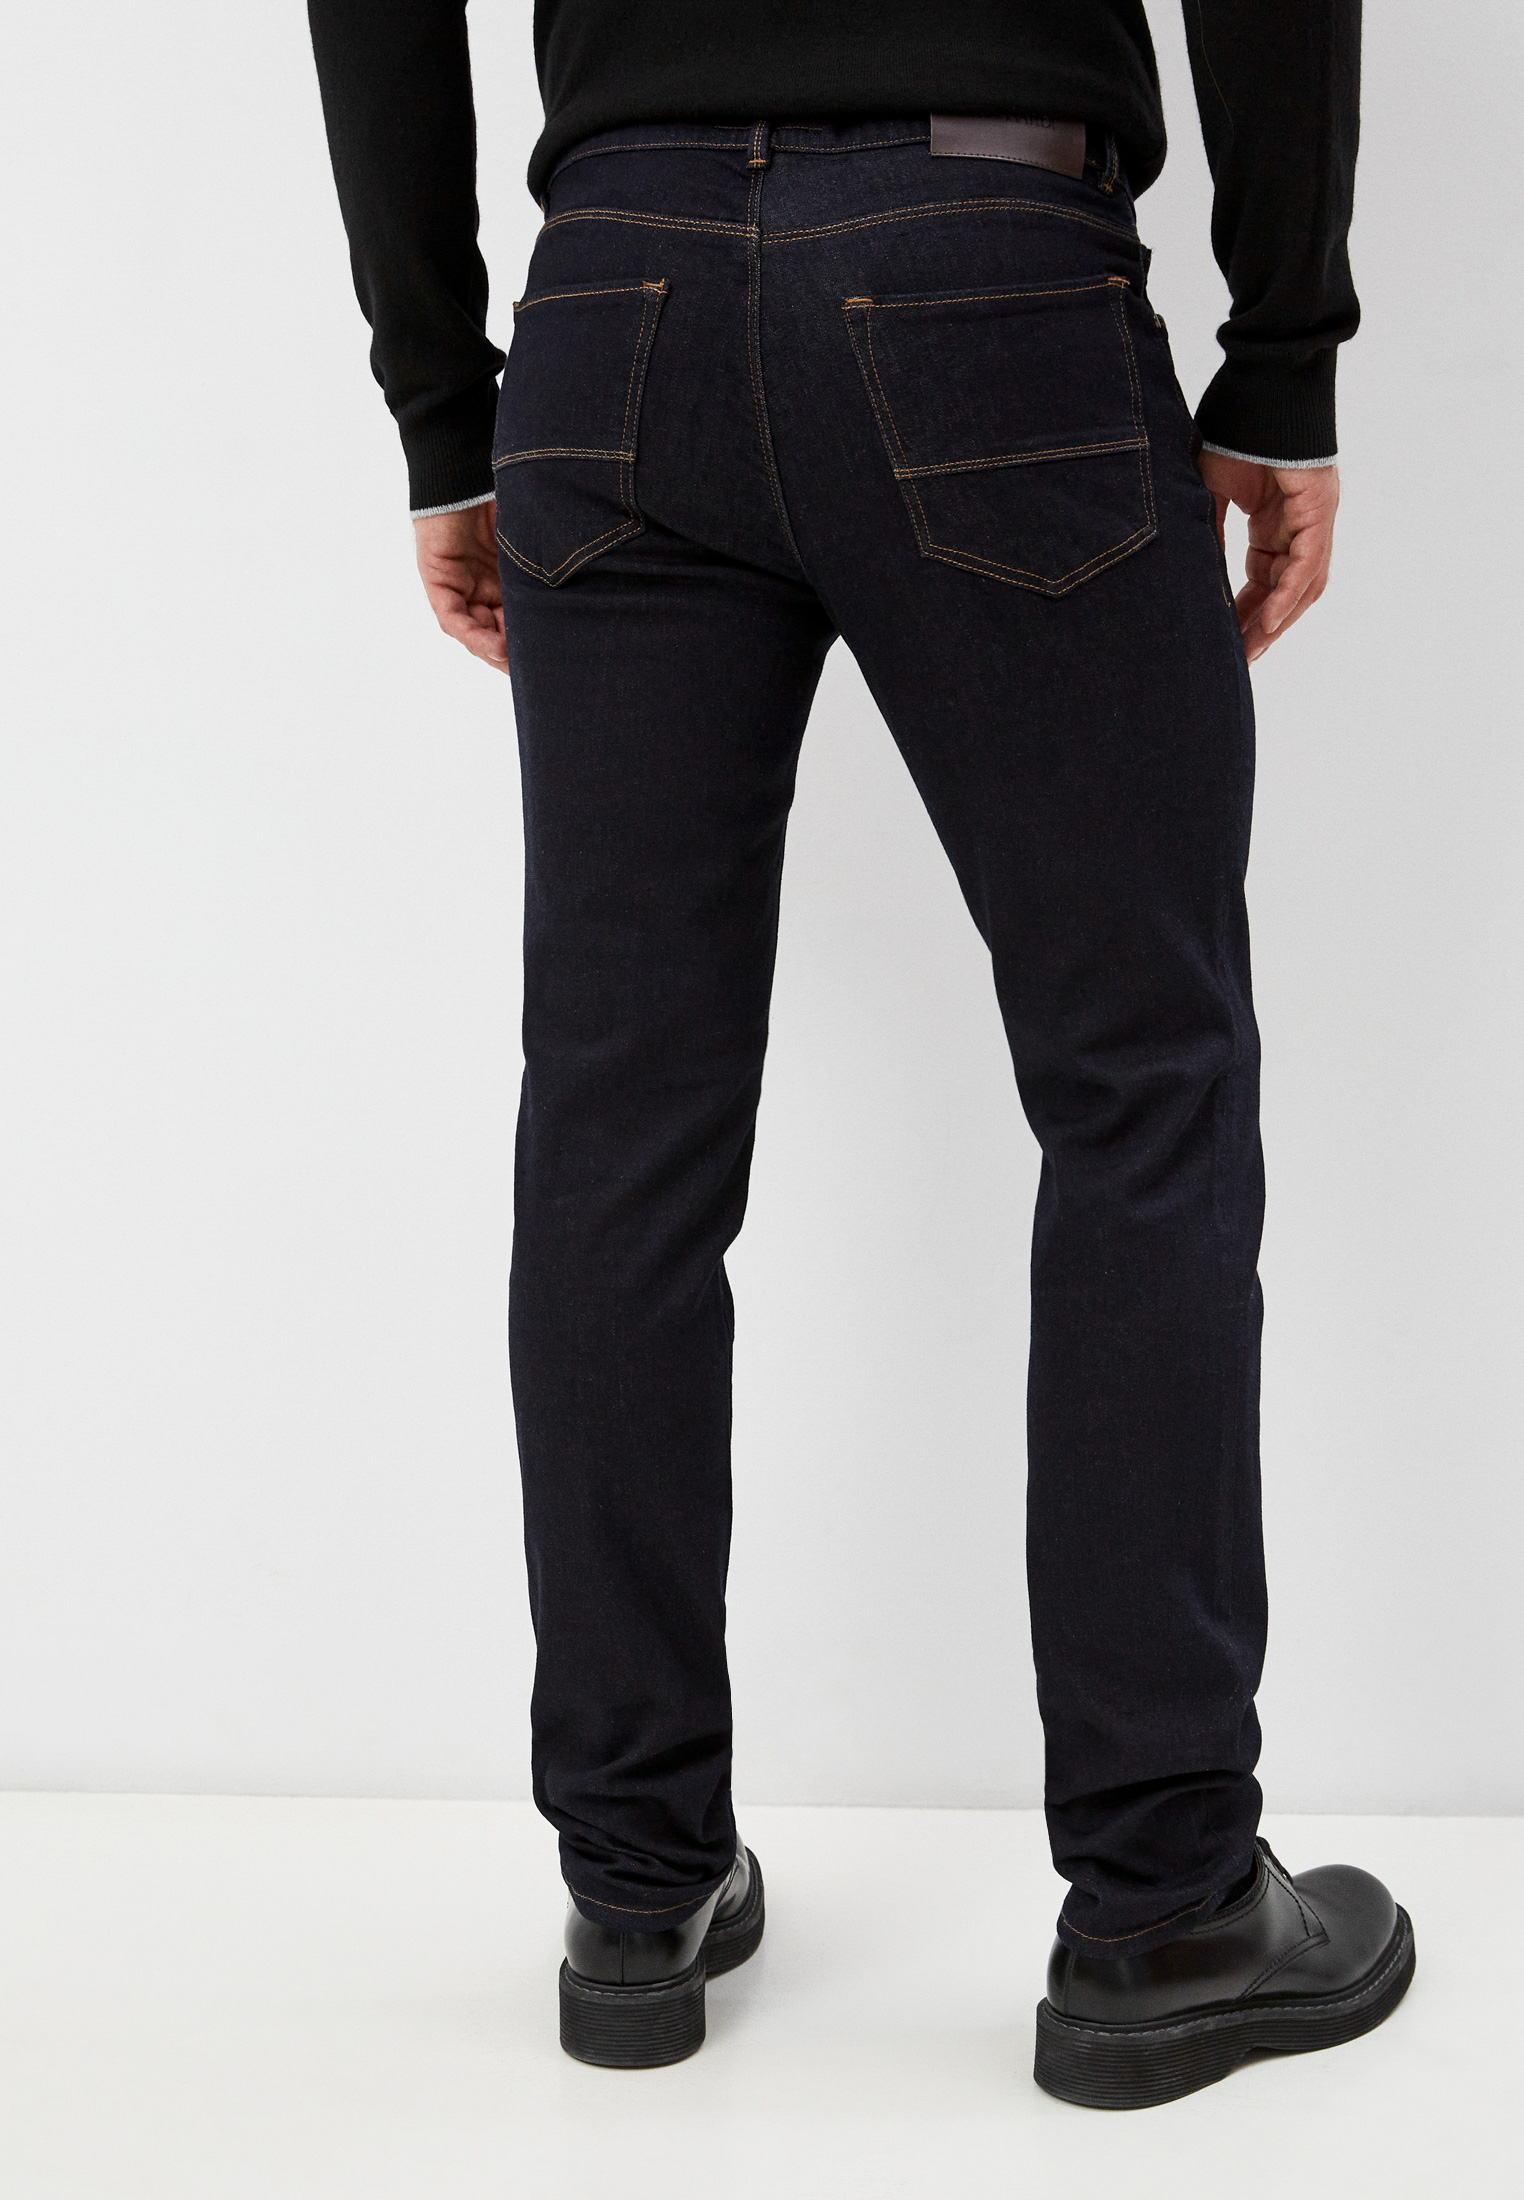 Мужские зауженные джинсы Trussardi (Труссарди) 52J00000-1Y000186: изображение 4